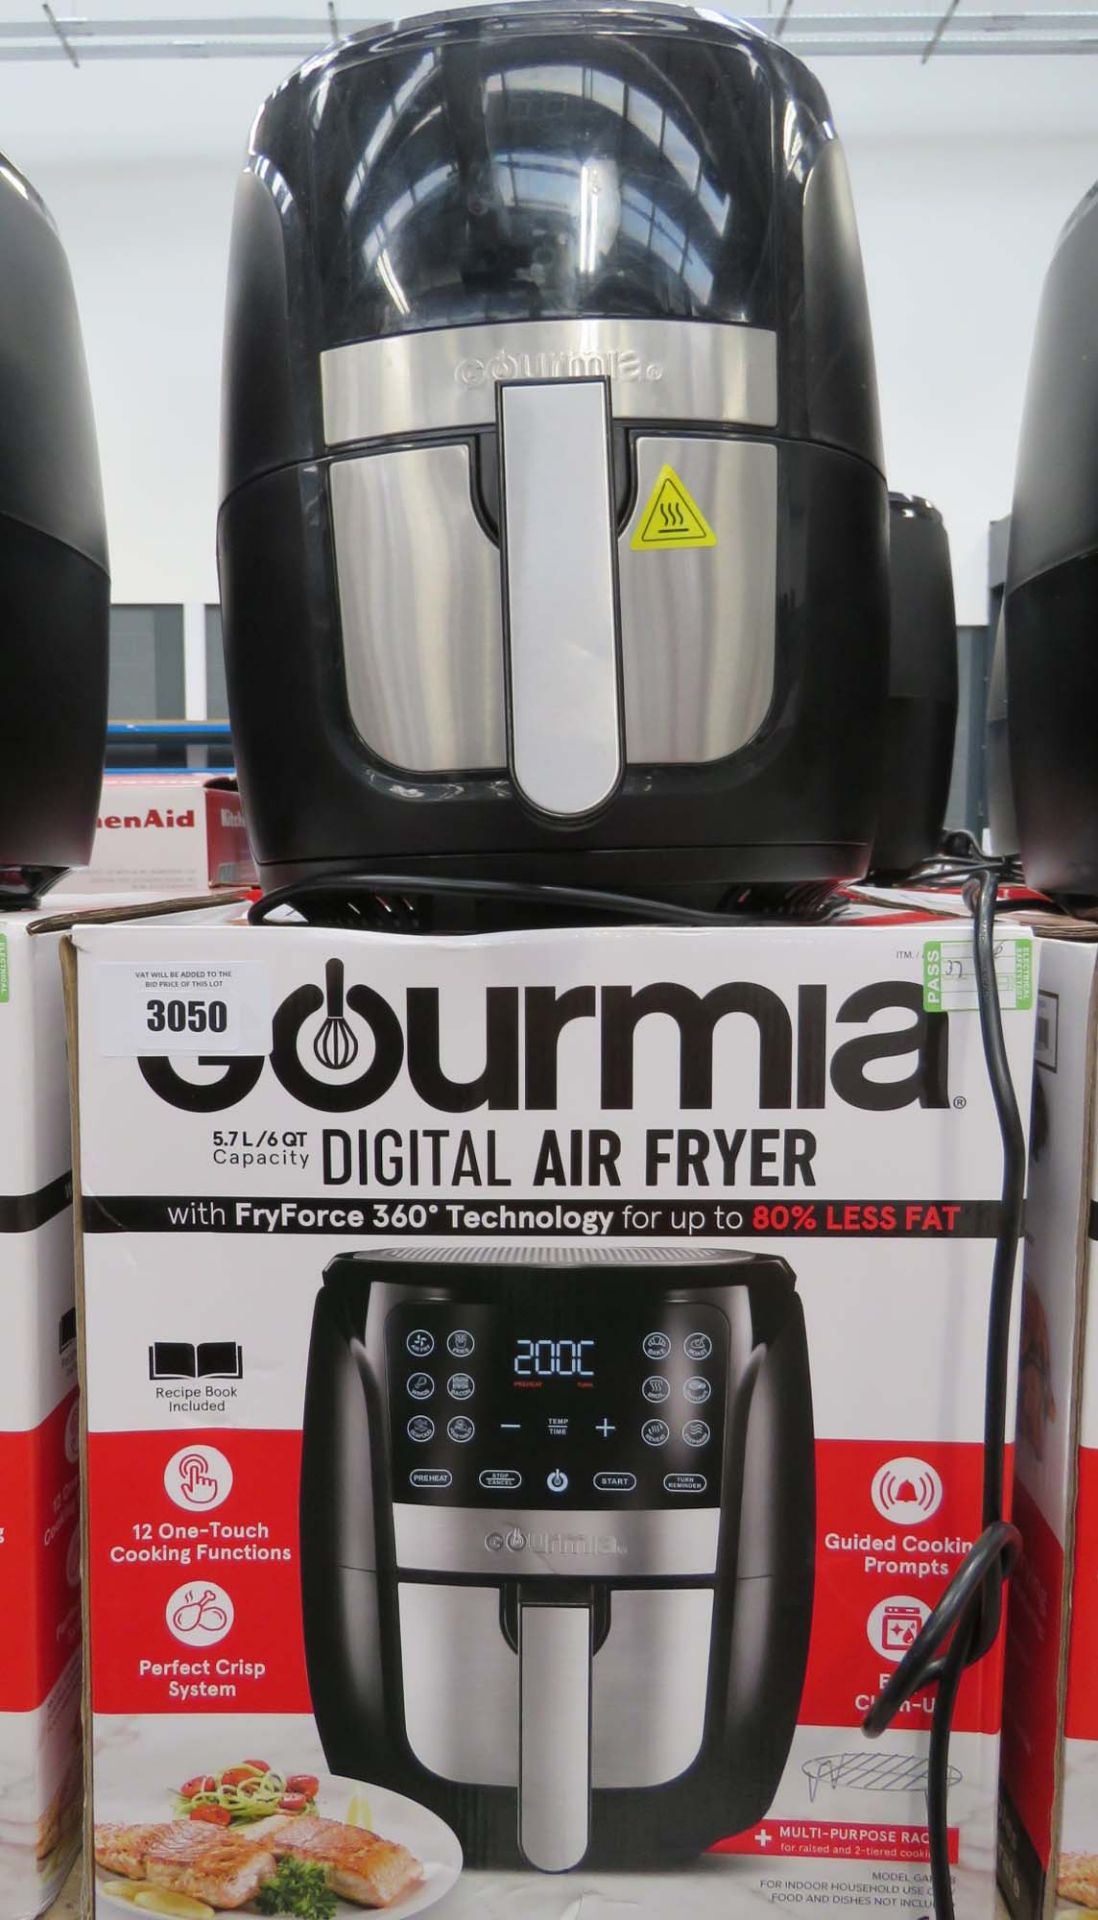 (6) Gourmet digital air fryer